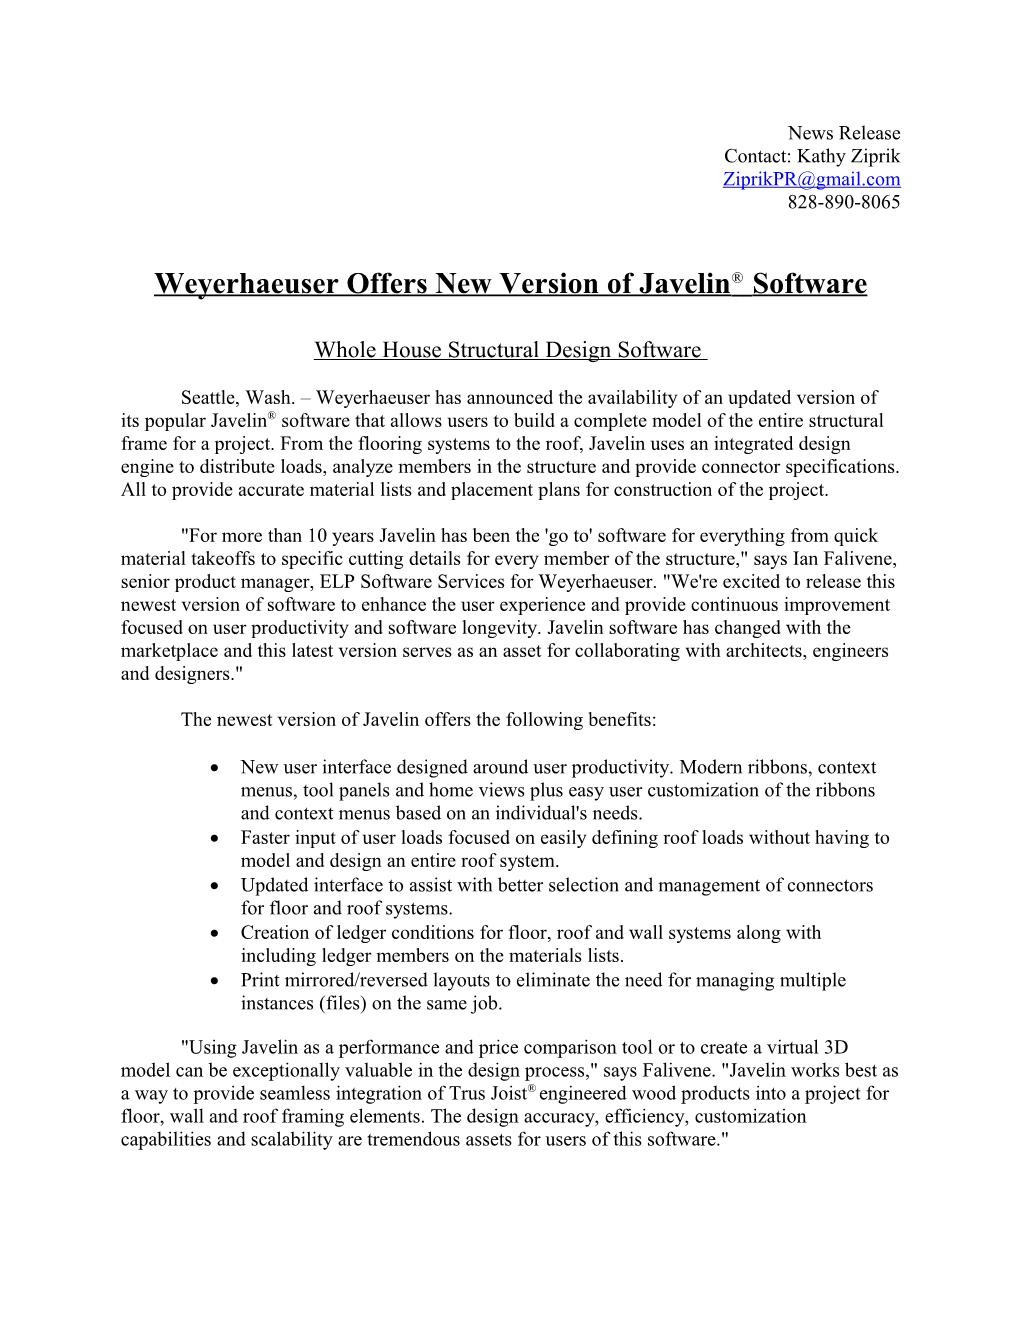 Weyerhaeuser Offers New Version of Javelin Software